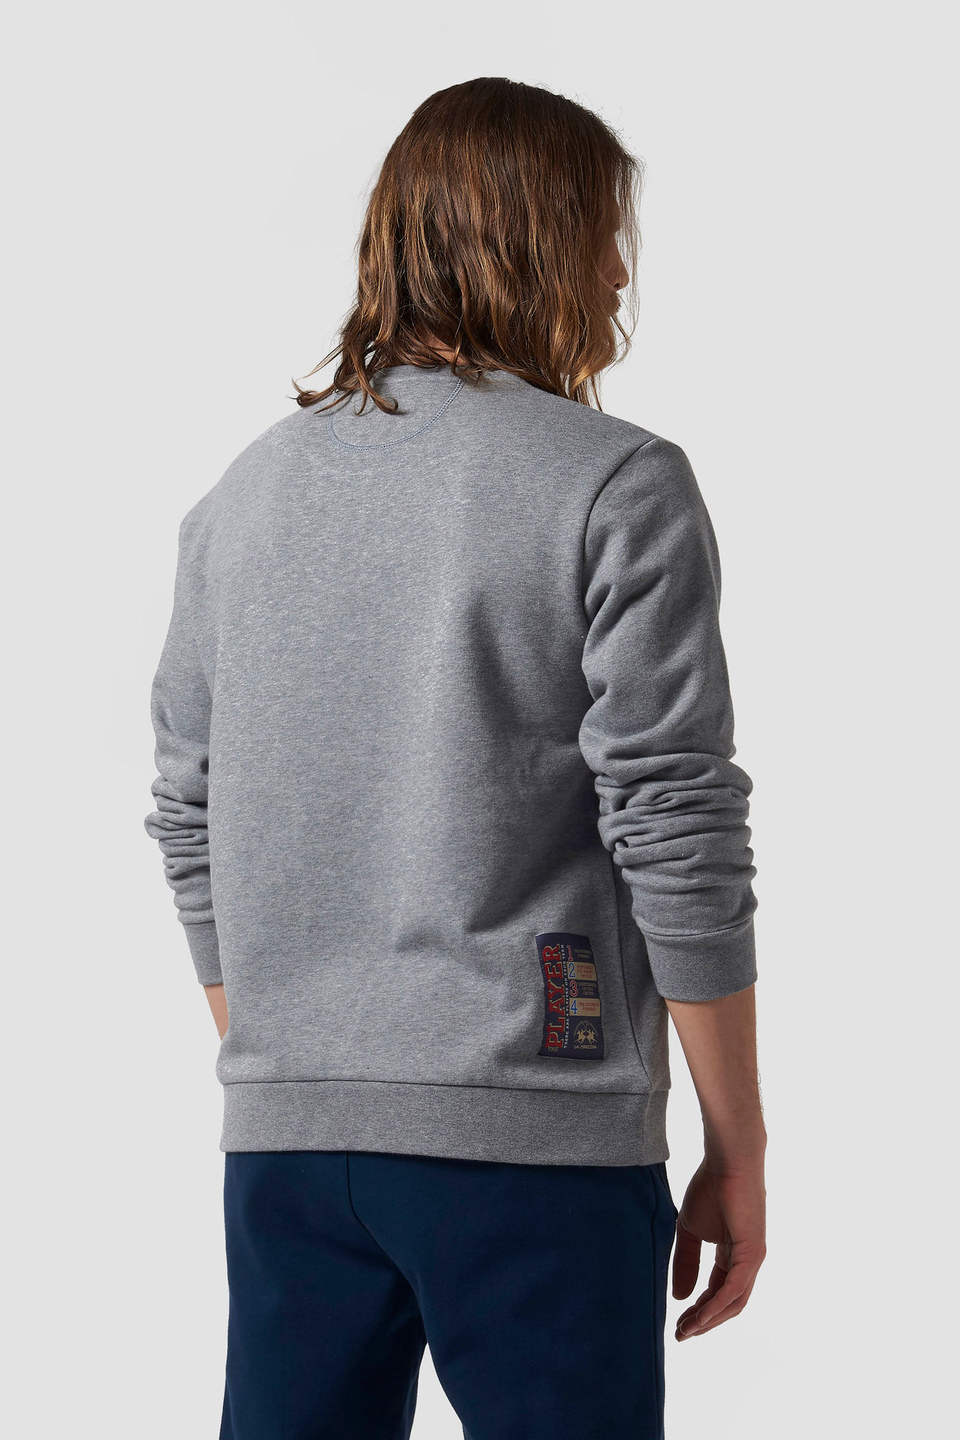 Cotton-blend crew-neck sweatshirt | La Martina - Official Online Shop